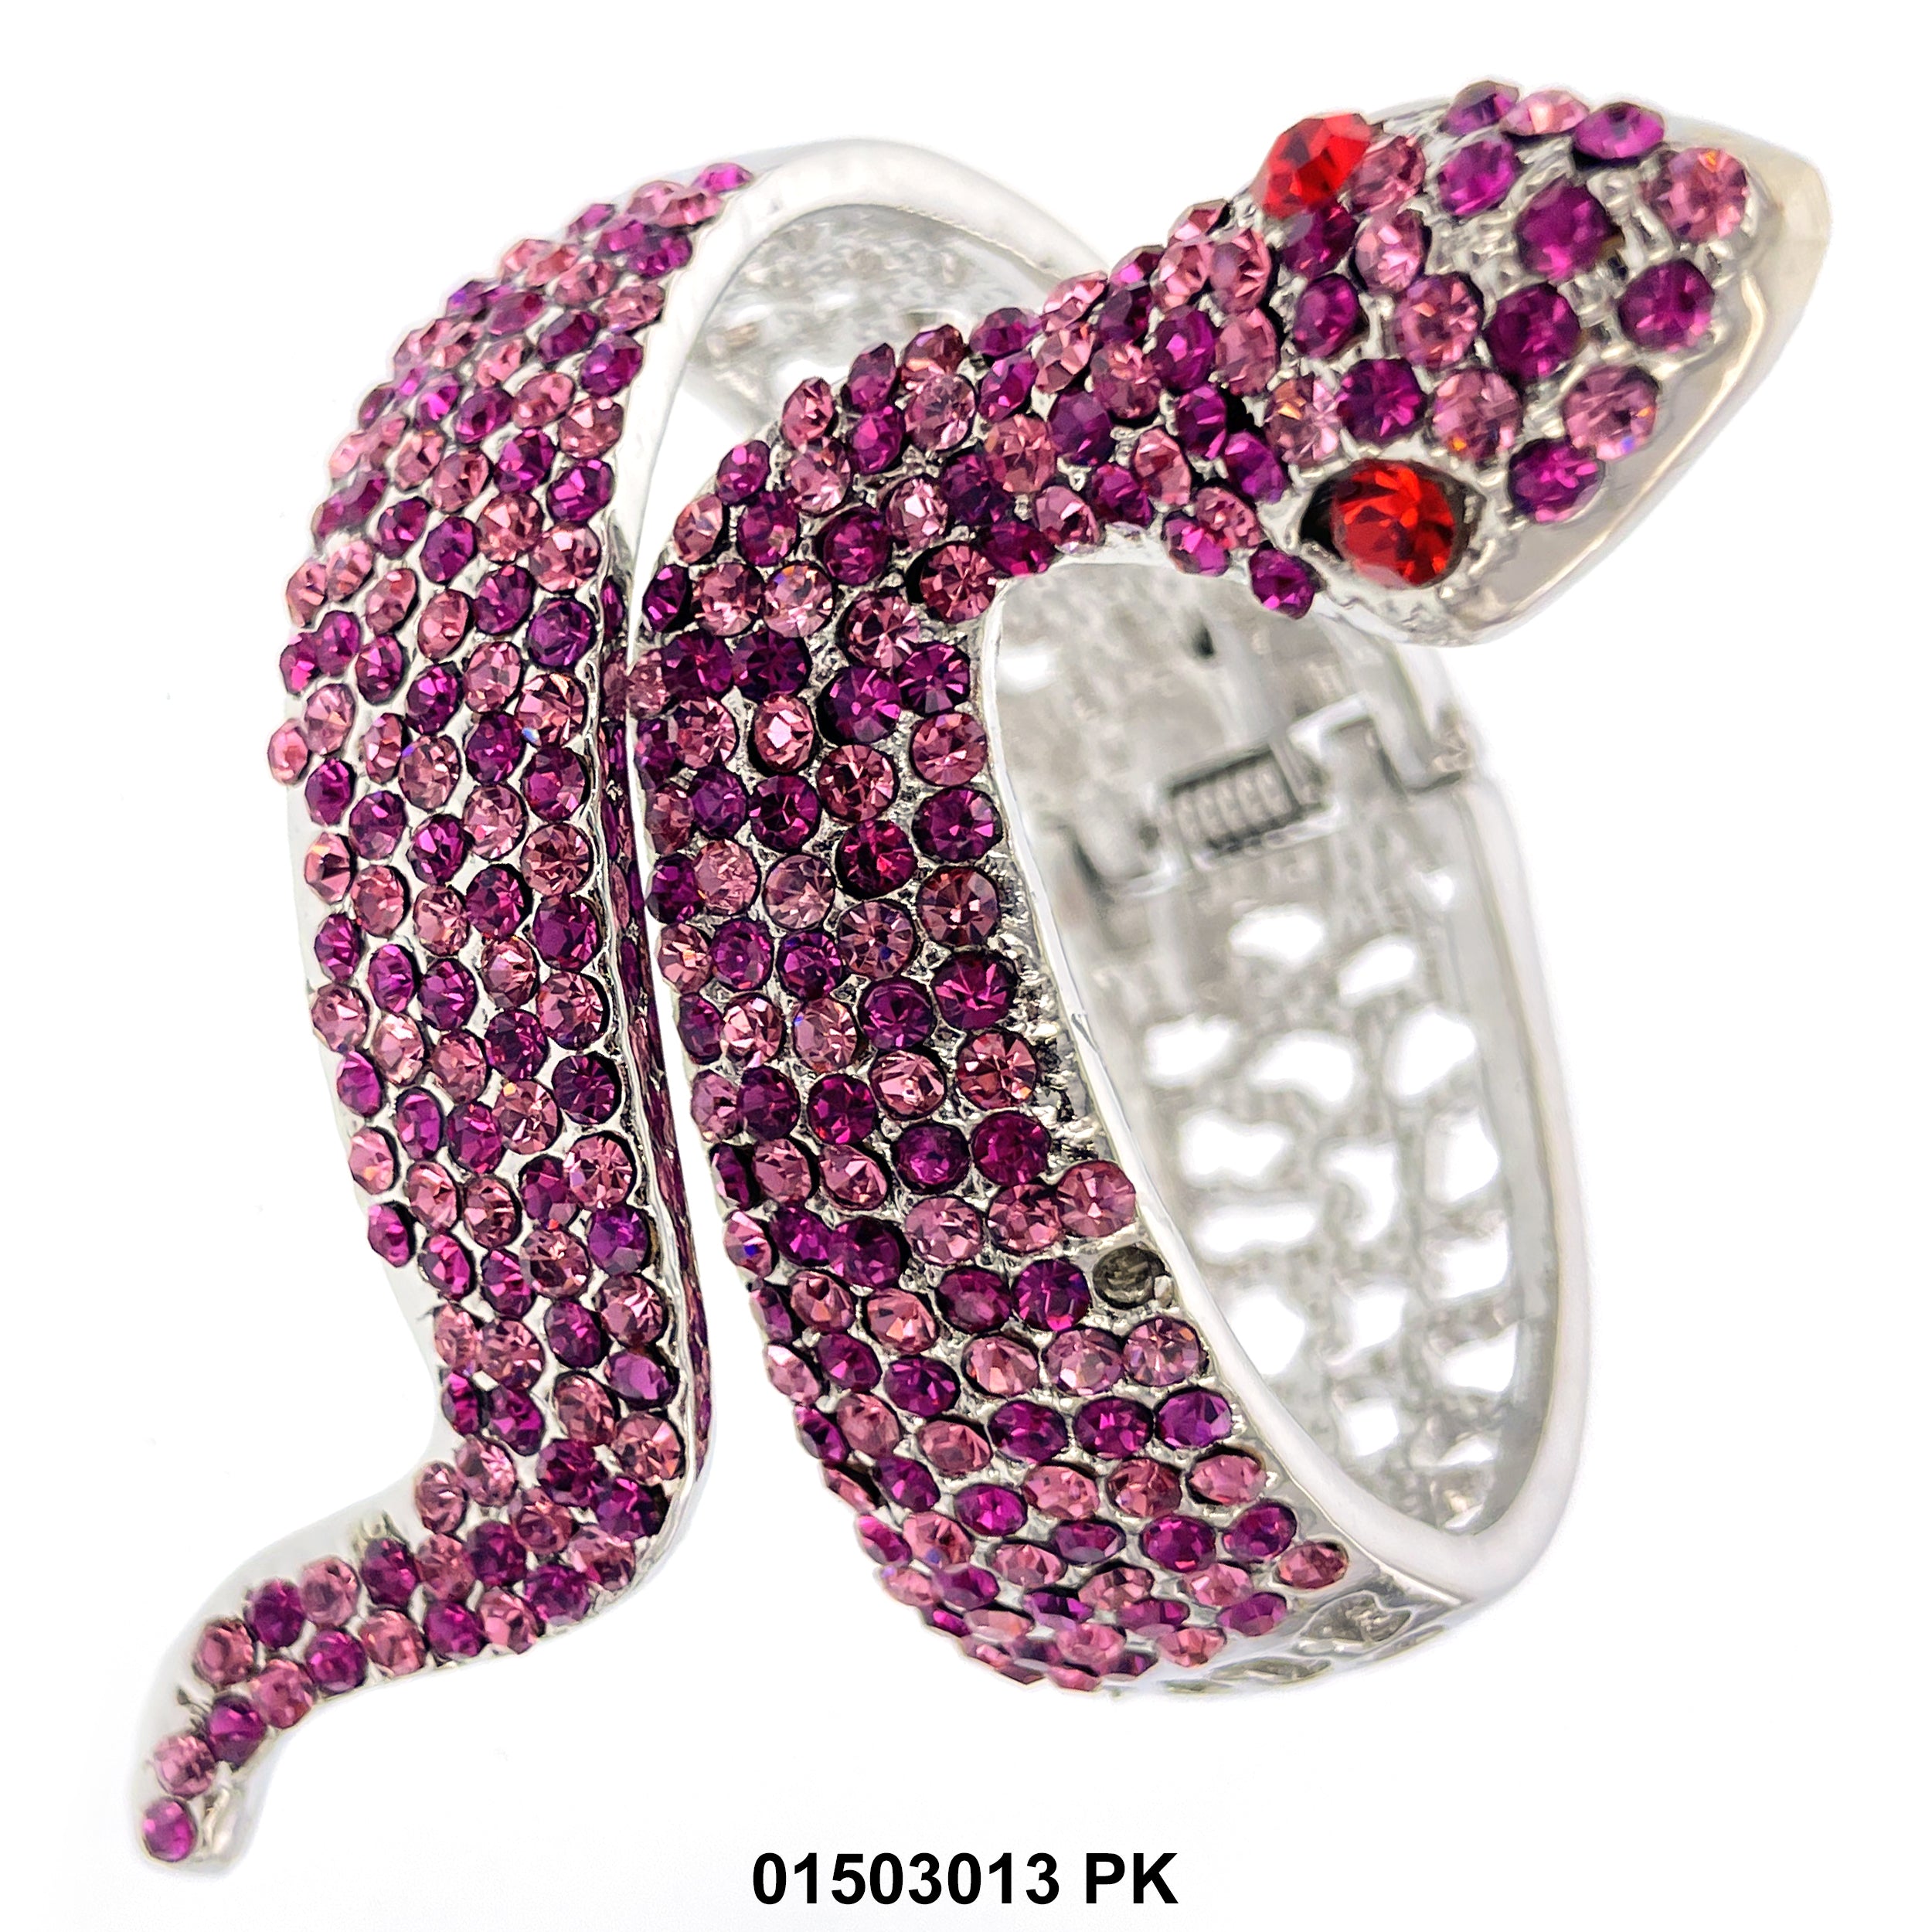 Snake Cuff Bangle Bracelet 01503013 PK